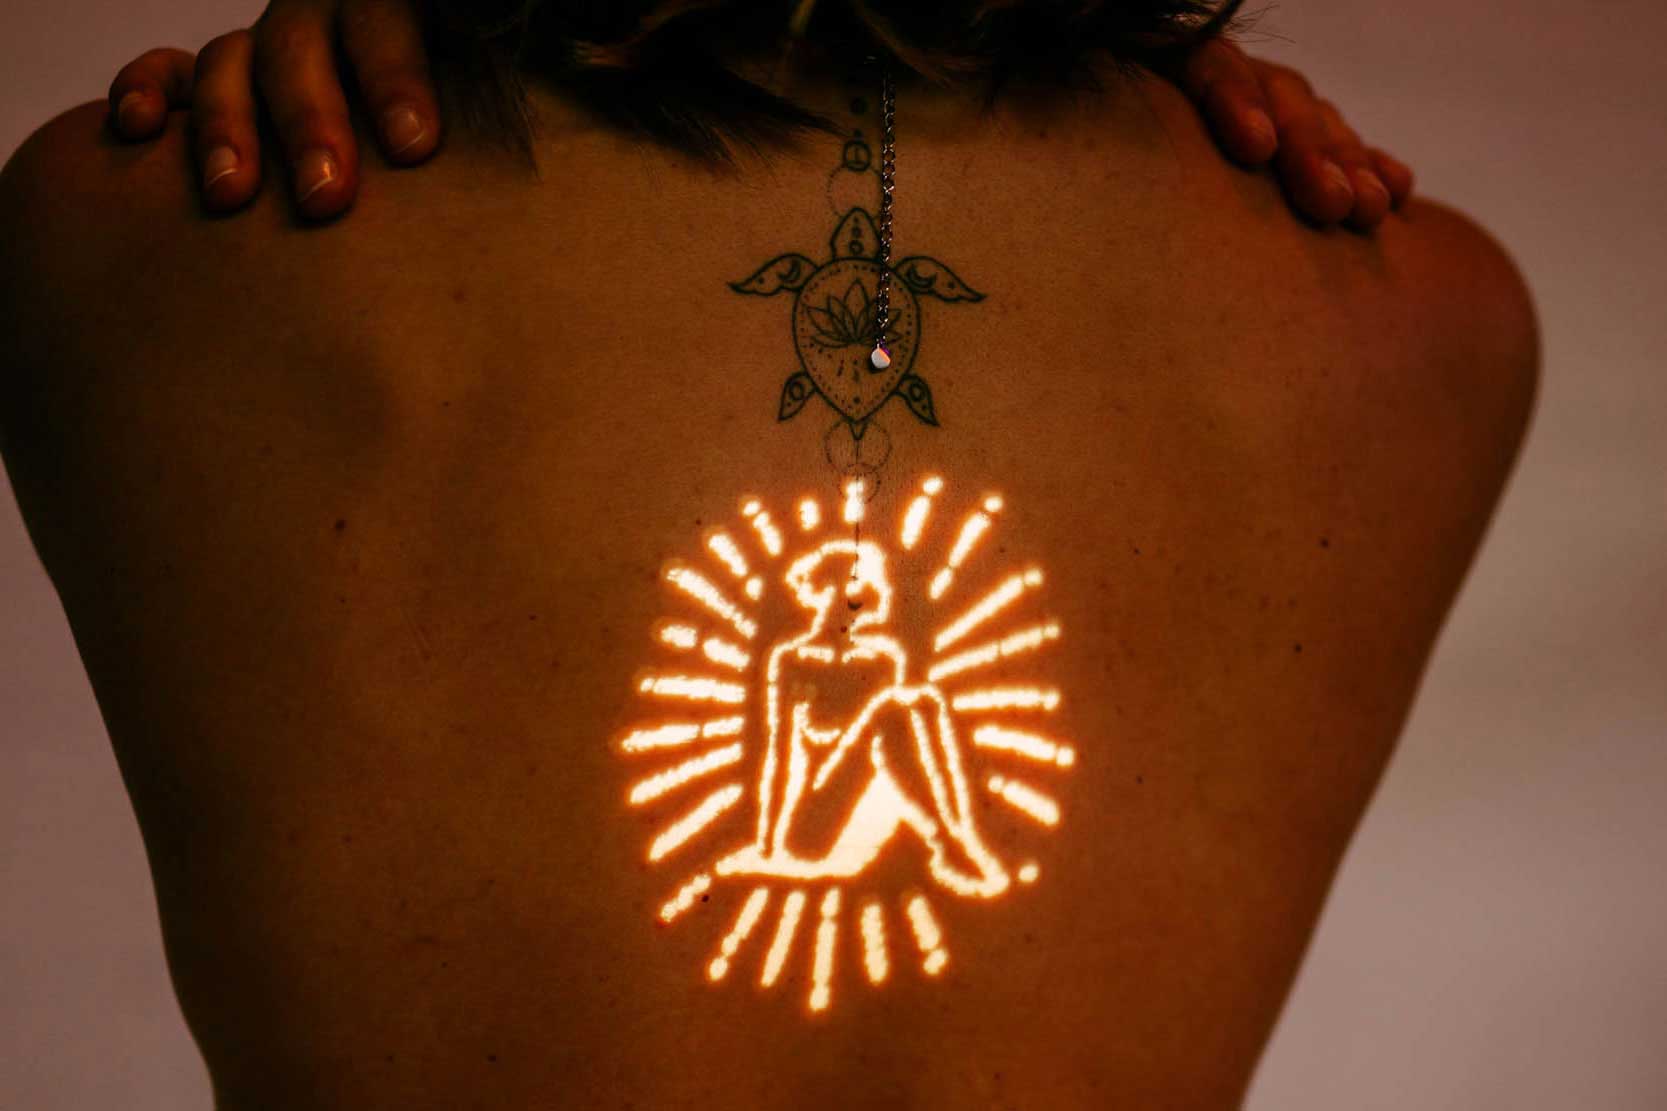 De rug van een vrouw versierd met een stralende tatoeage met krachtige zelfliefde-citaten.